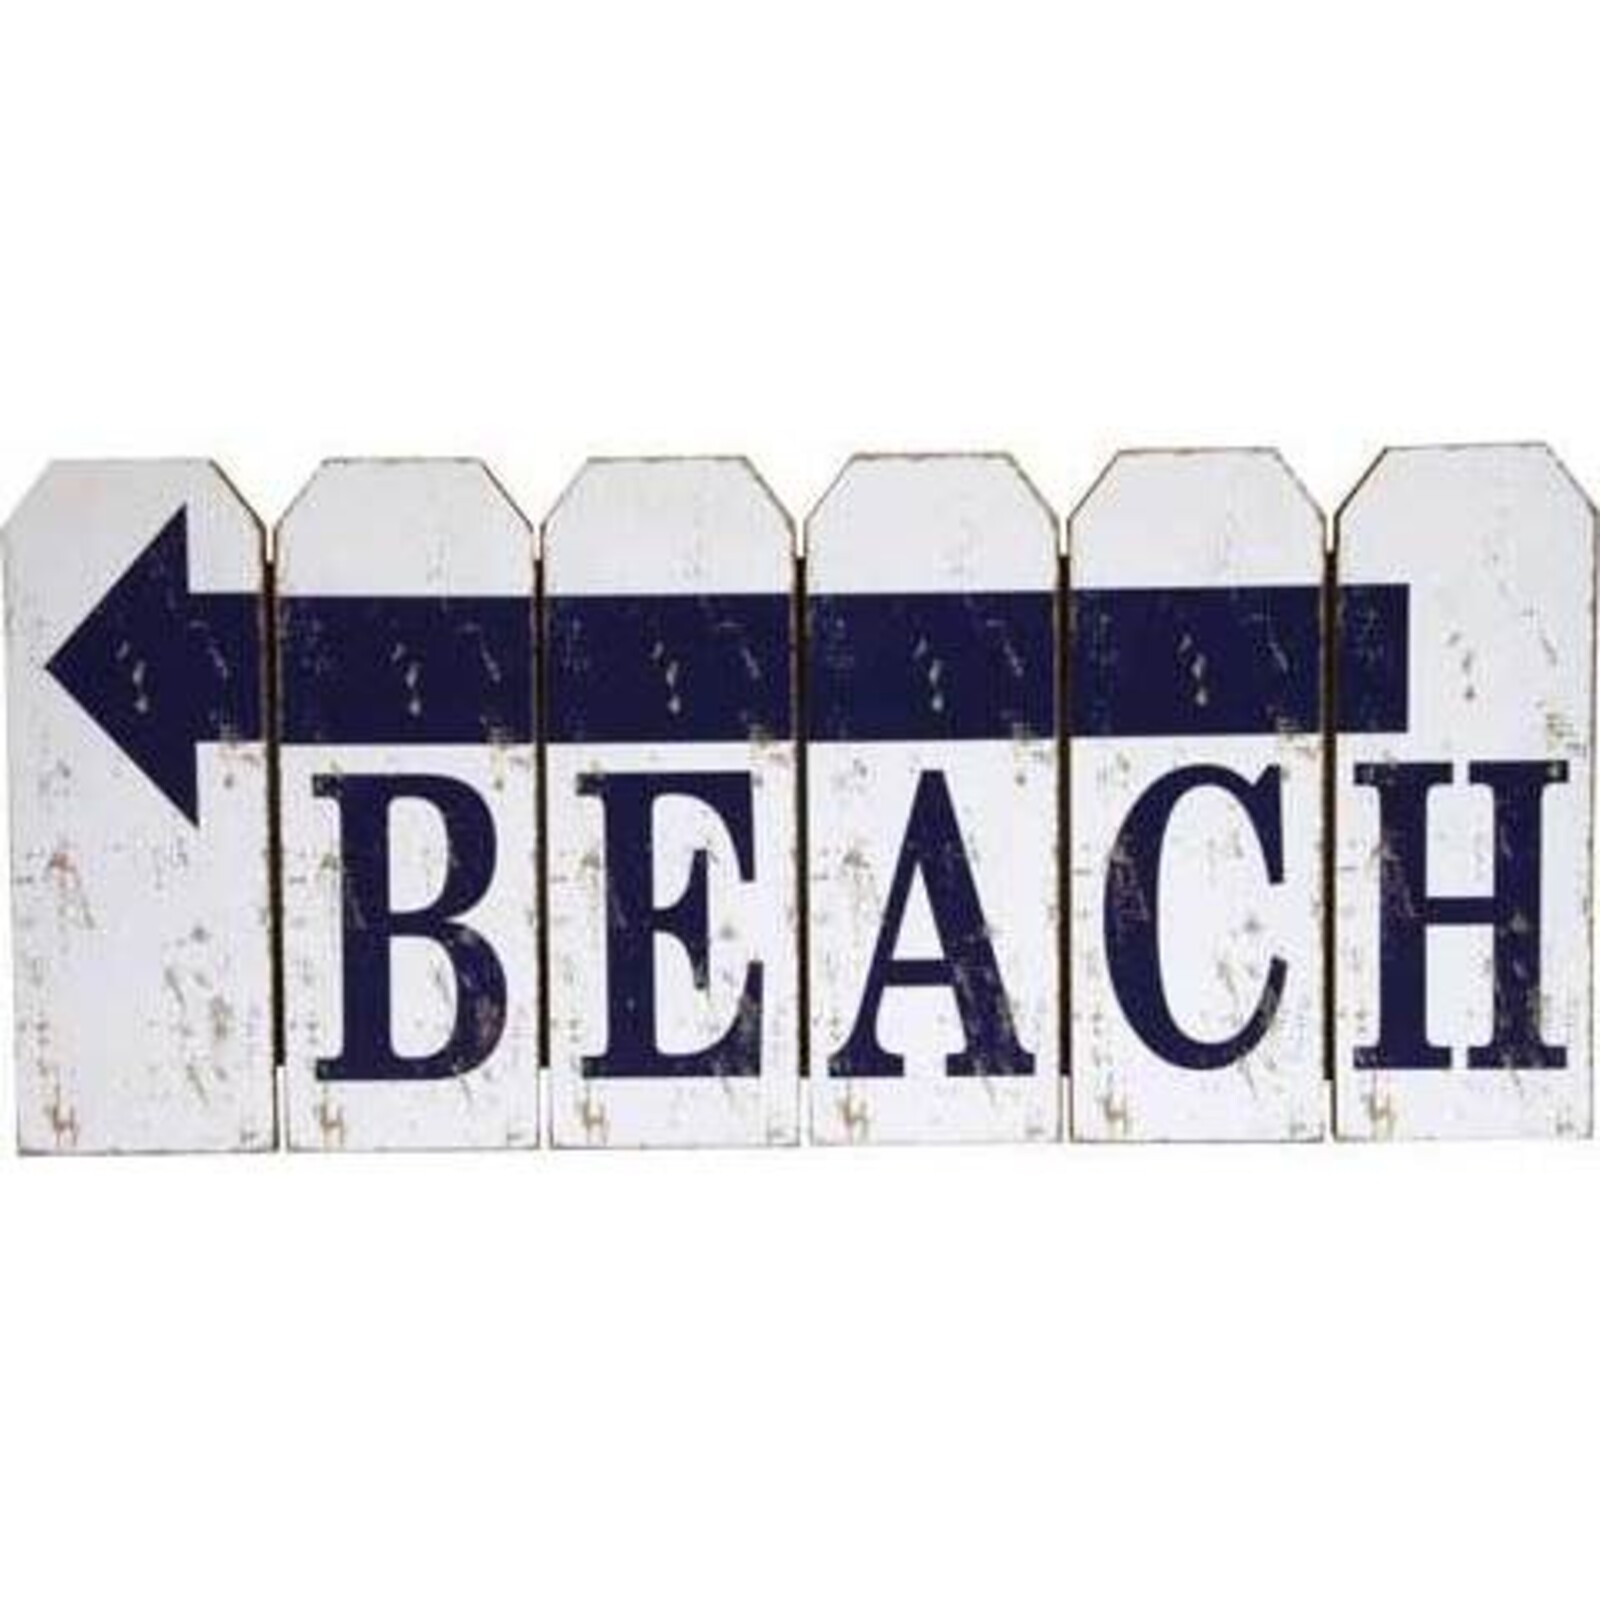 Sign Beach Fence